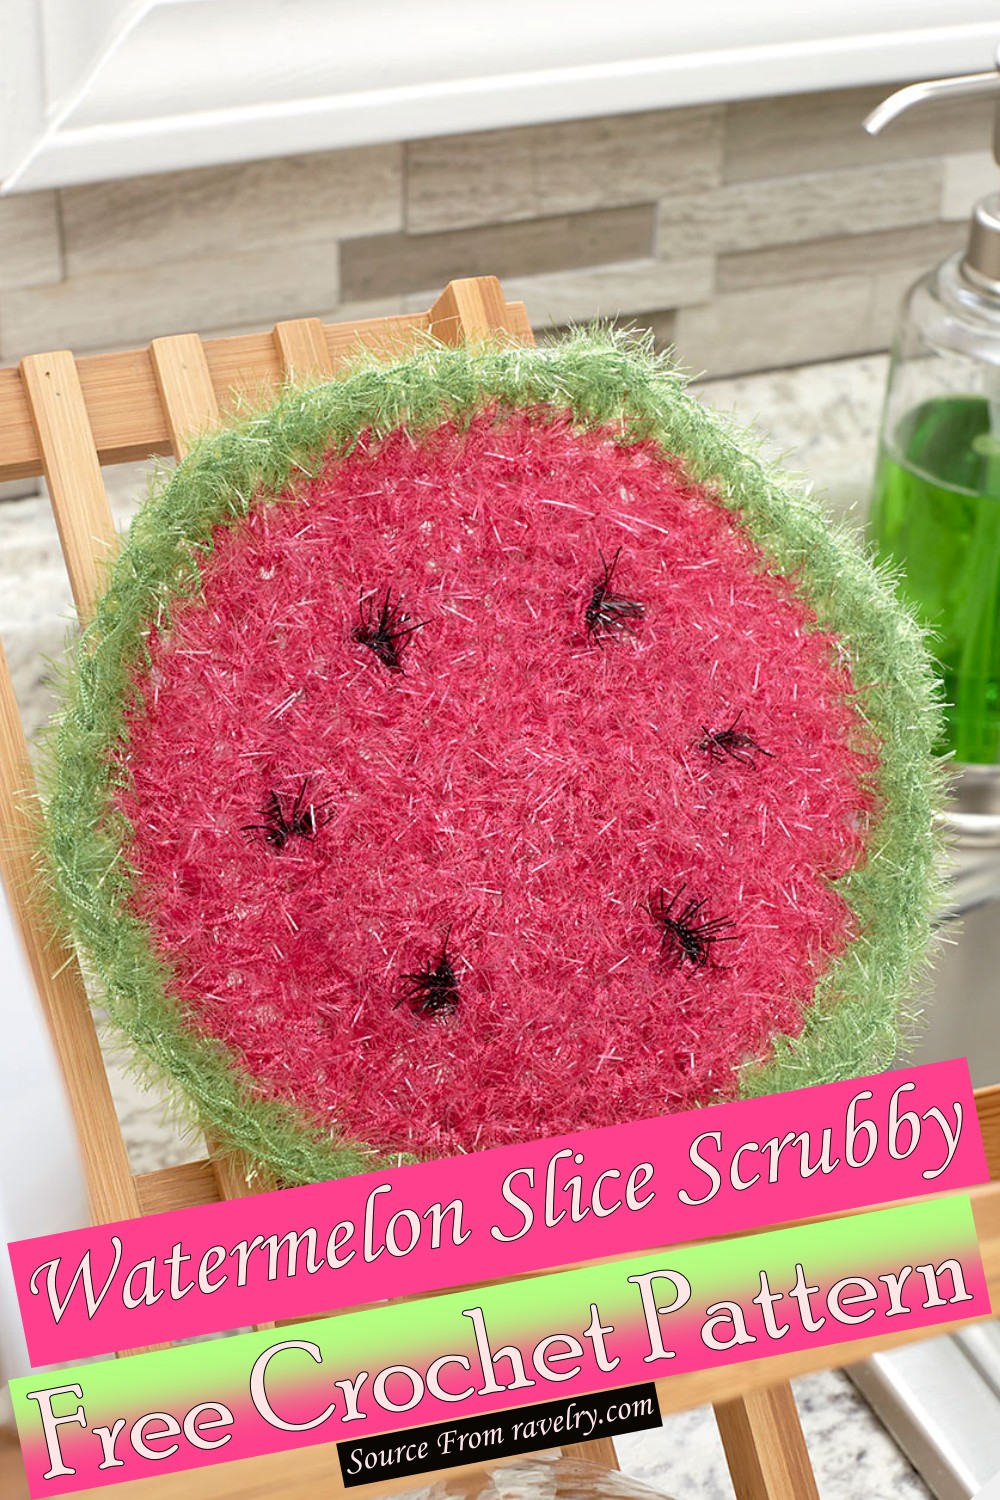 Free Crochet Watermelon Slice Scrubby Pattern